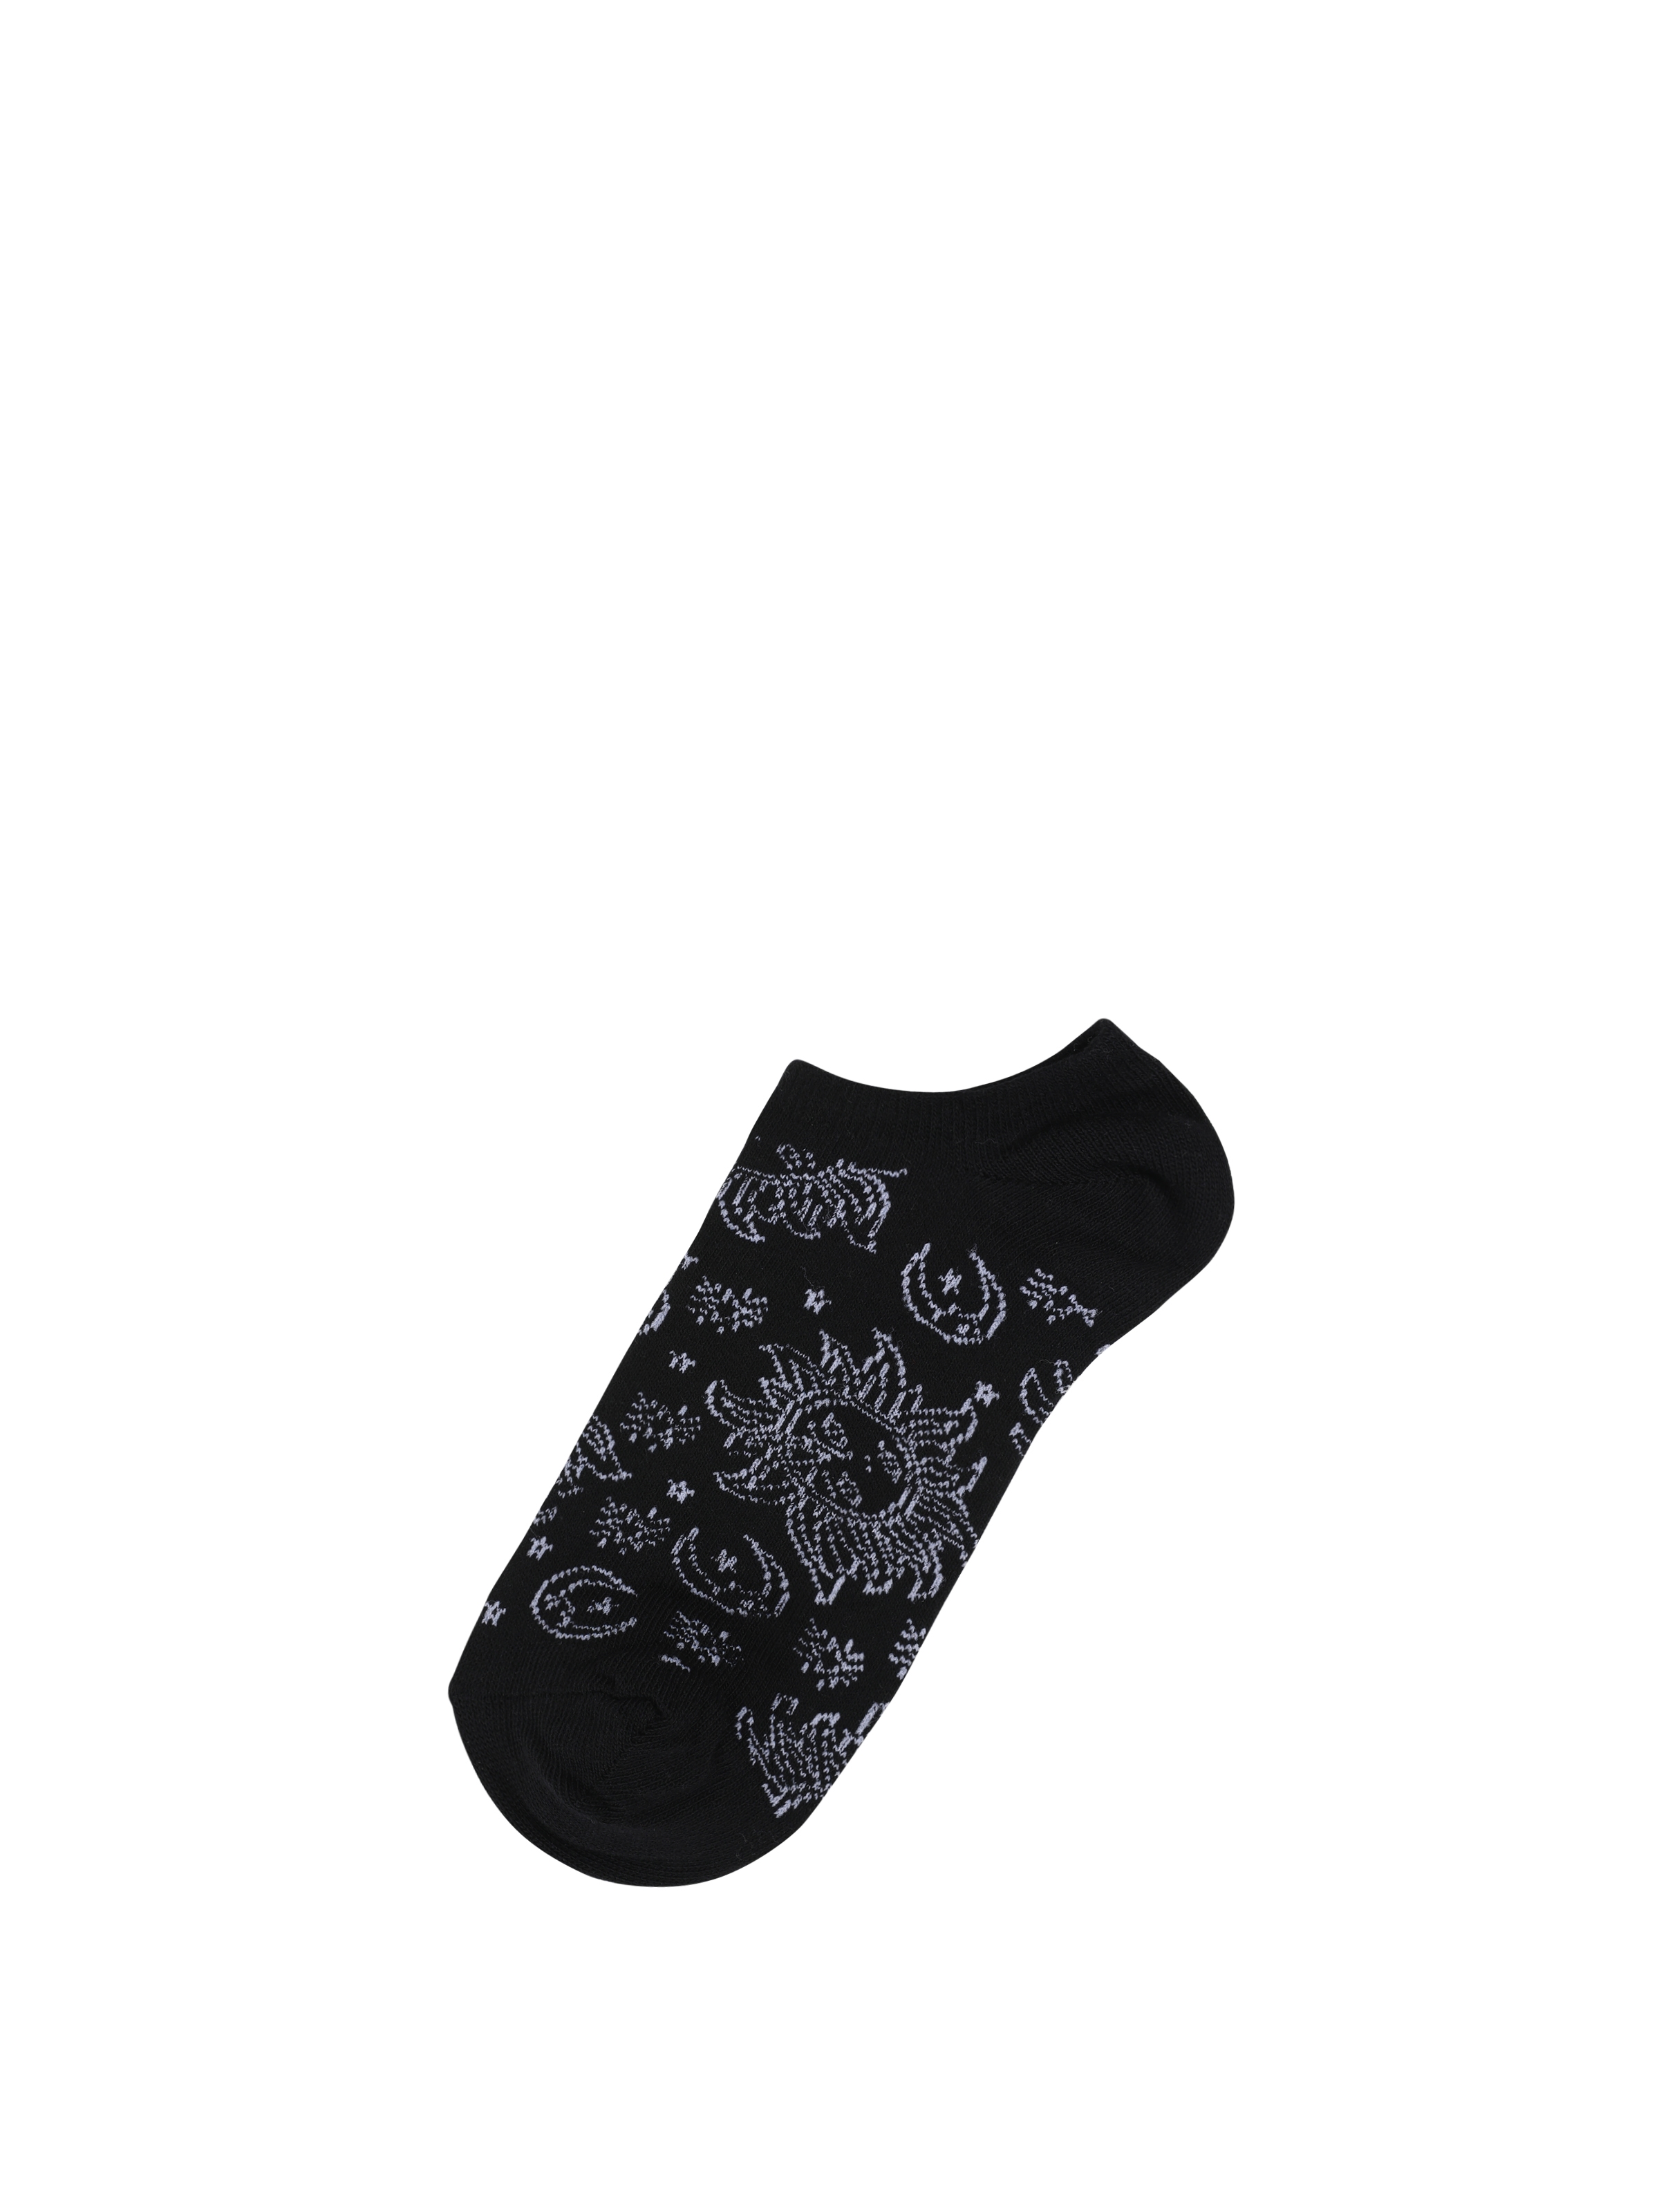 Показати інформацію про Шкарпетки Жіночі Чорні З Принтом Cl1062086